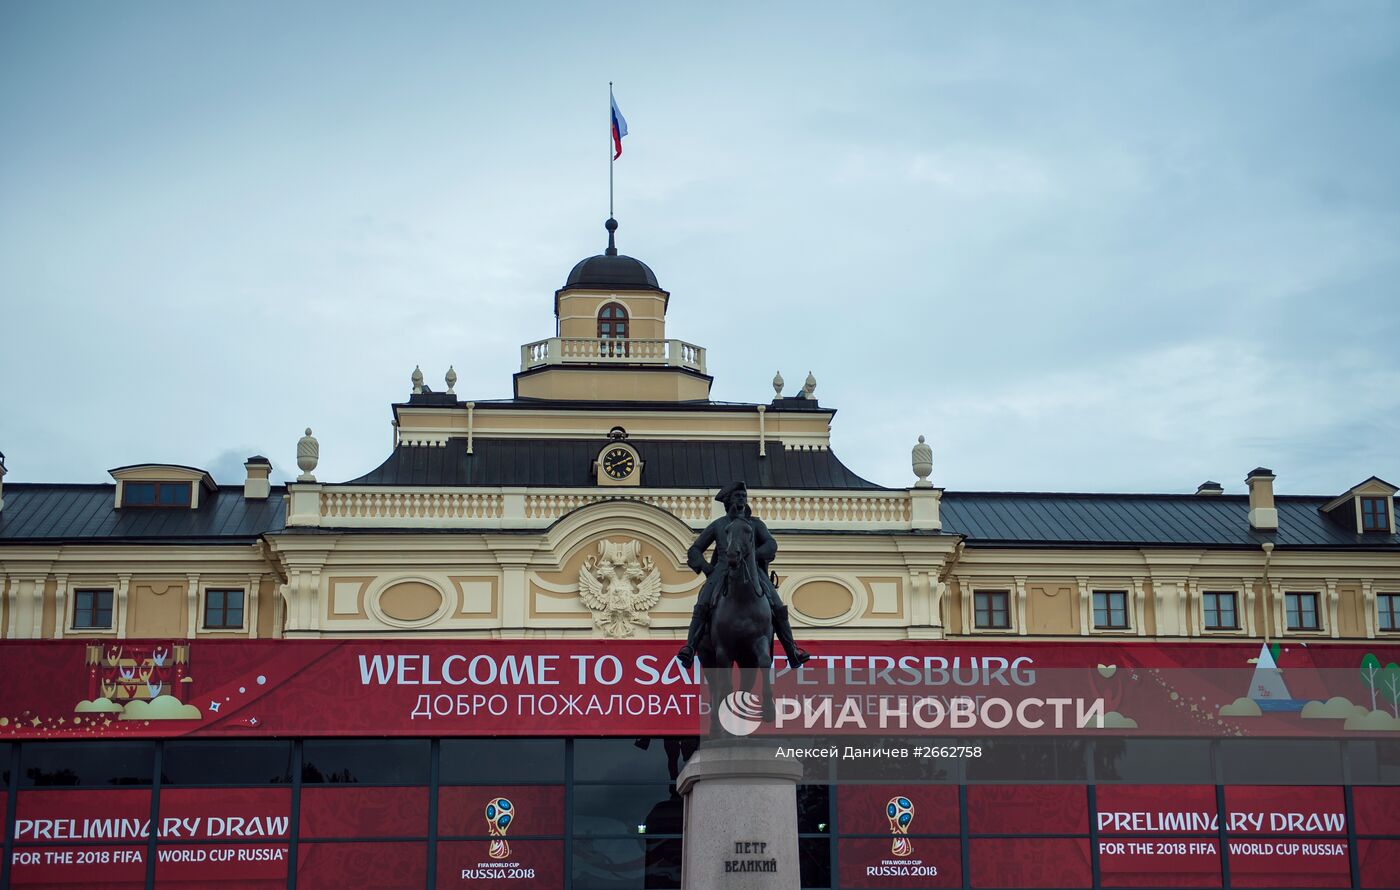 Подготовка к предварительной жеребьевке ЧМ-2018 по футболу в Санкт-Петербурге